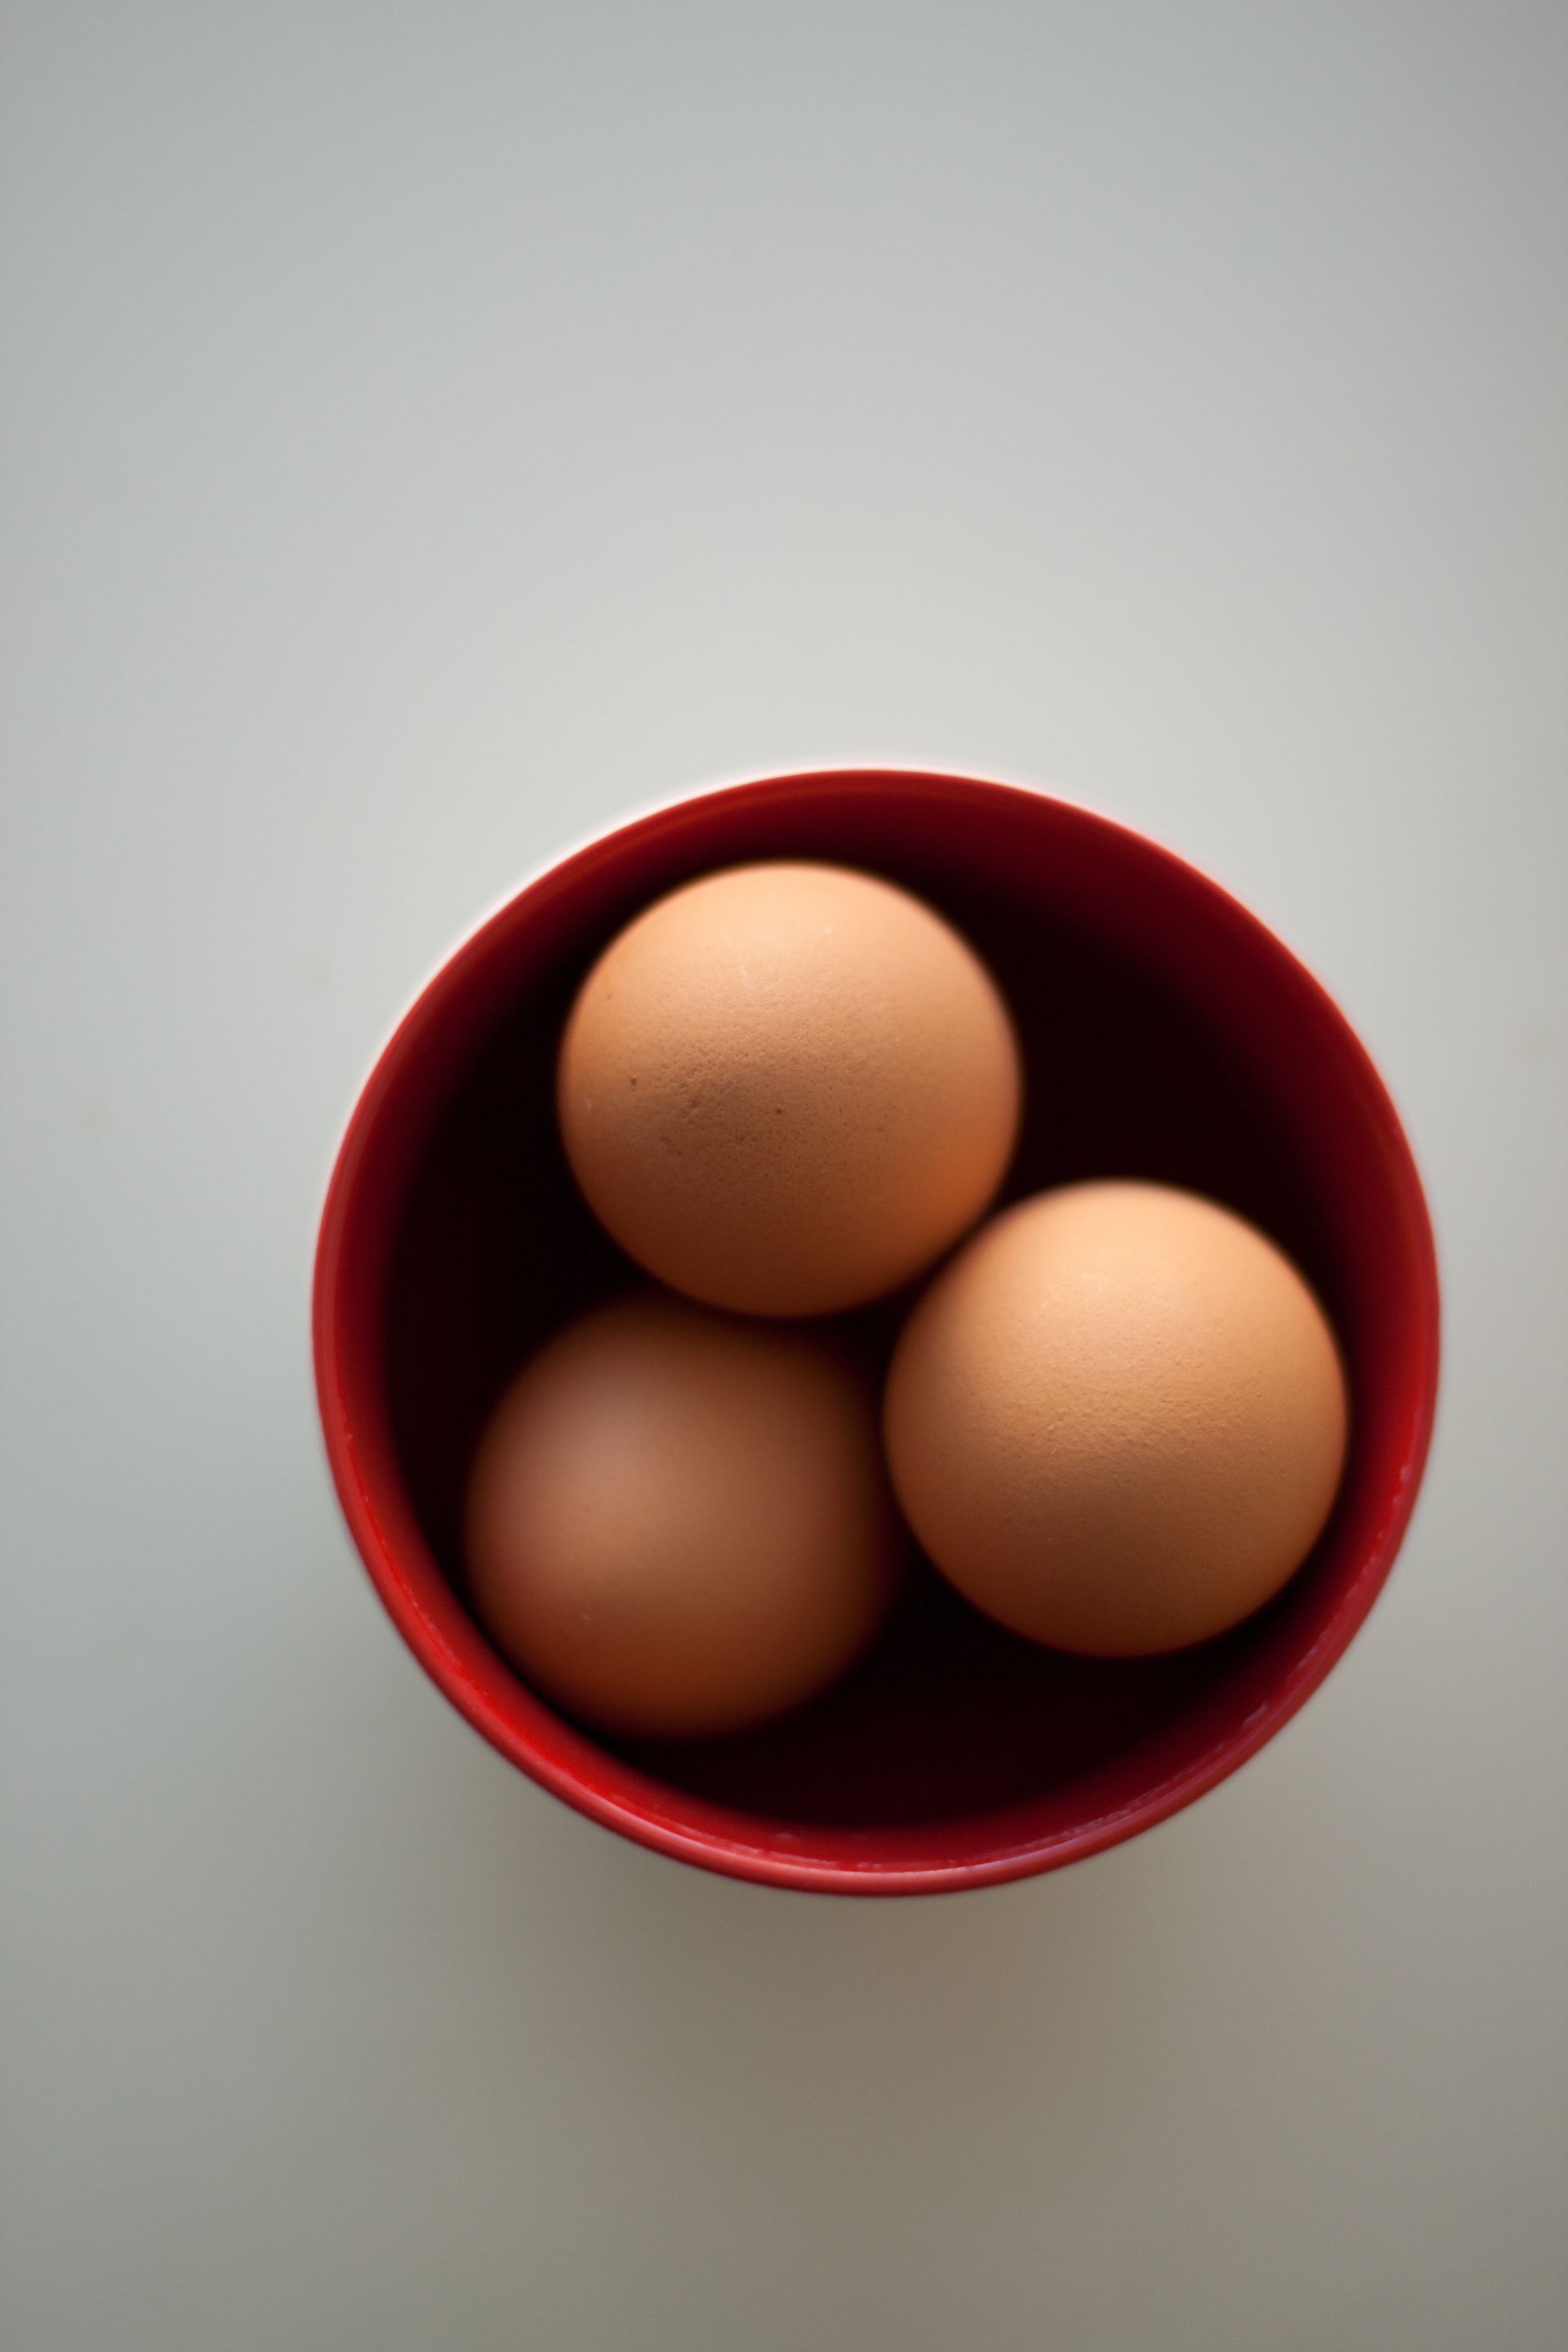 Tan eggs in a bowl.